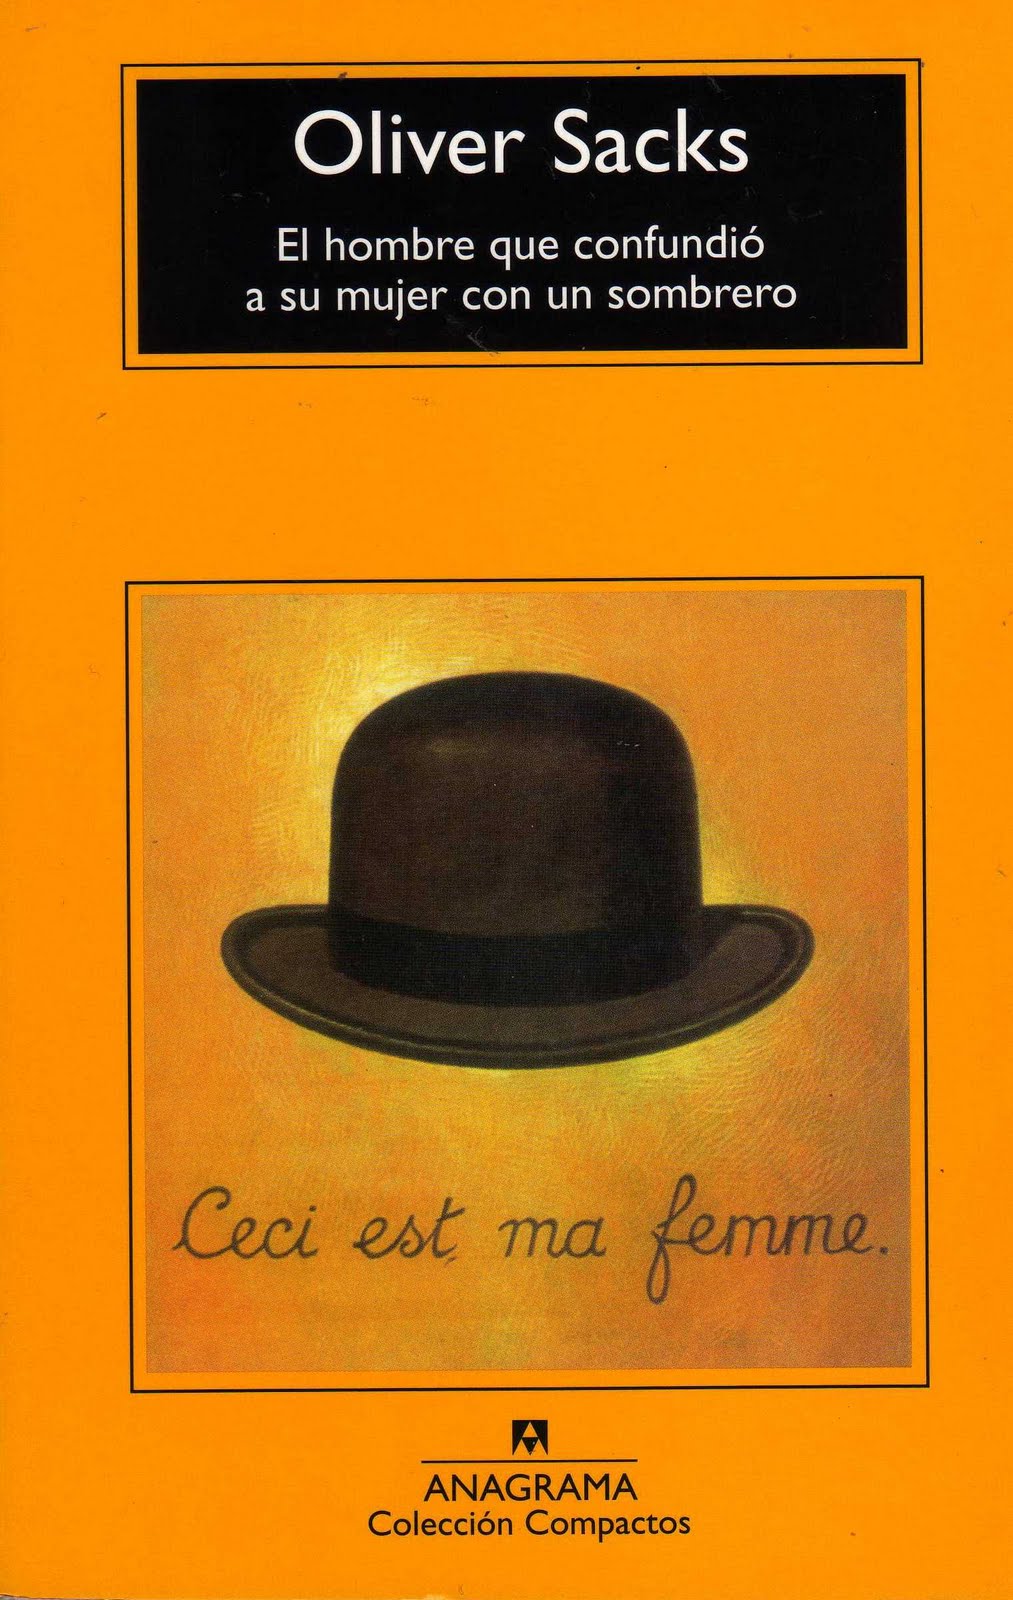 El hombre que confundió a su mujer con un sombrero. by laura sanchez on  Prezi Next